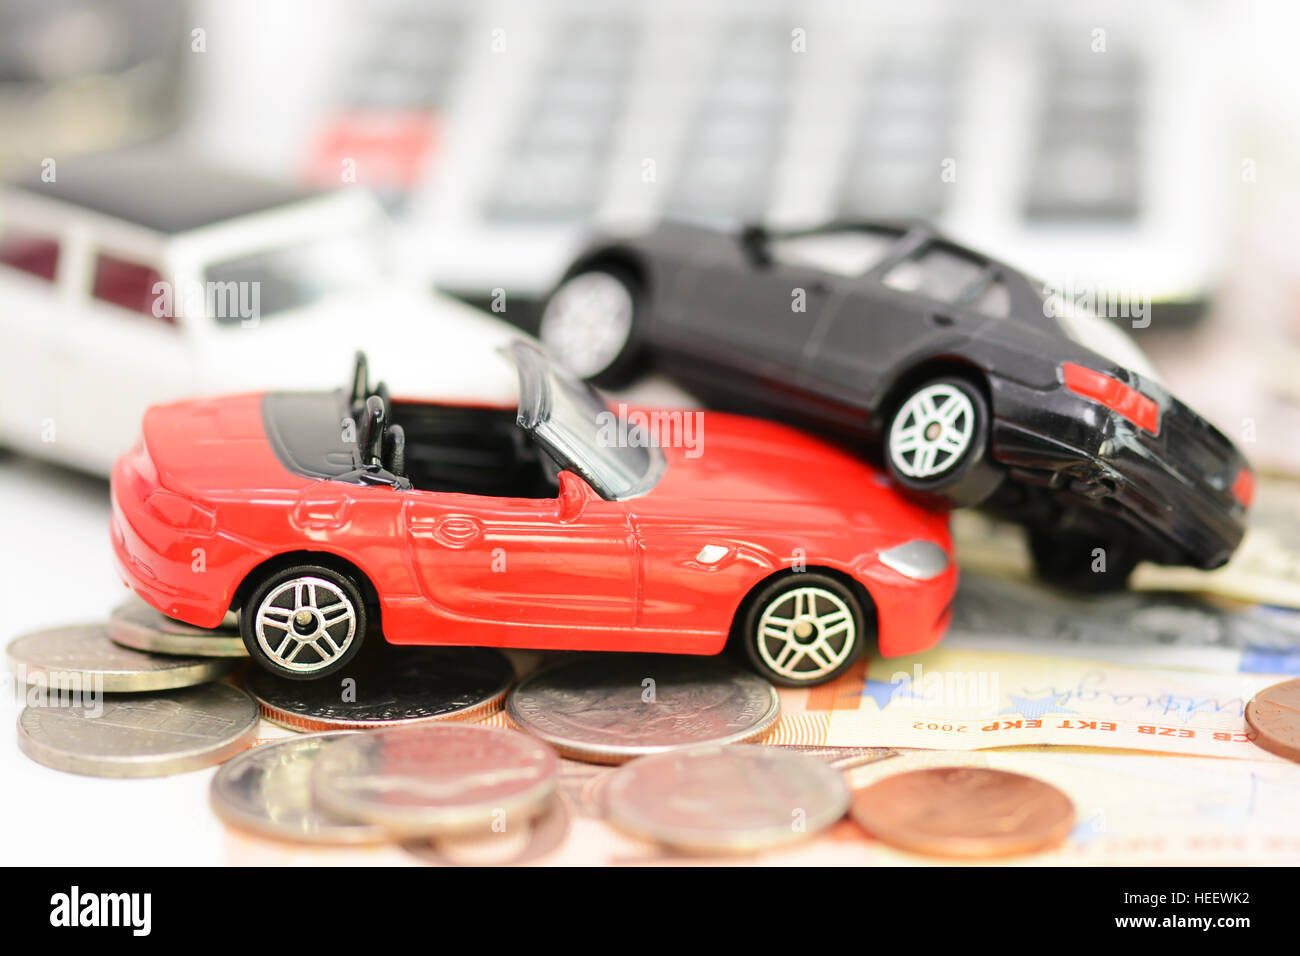 Auto-Versicherung-Konzept mit bunten Spielzeug-Autos, Autoschlüssel, Münzen und Scheine Stockfoto